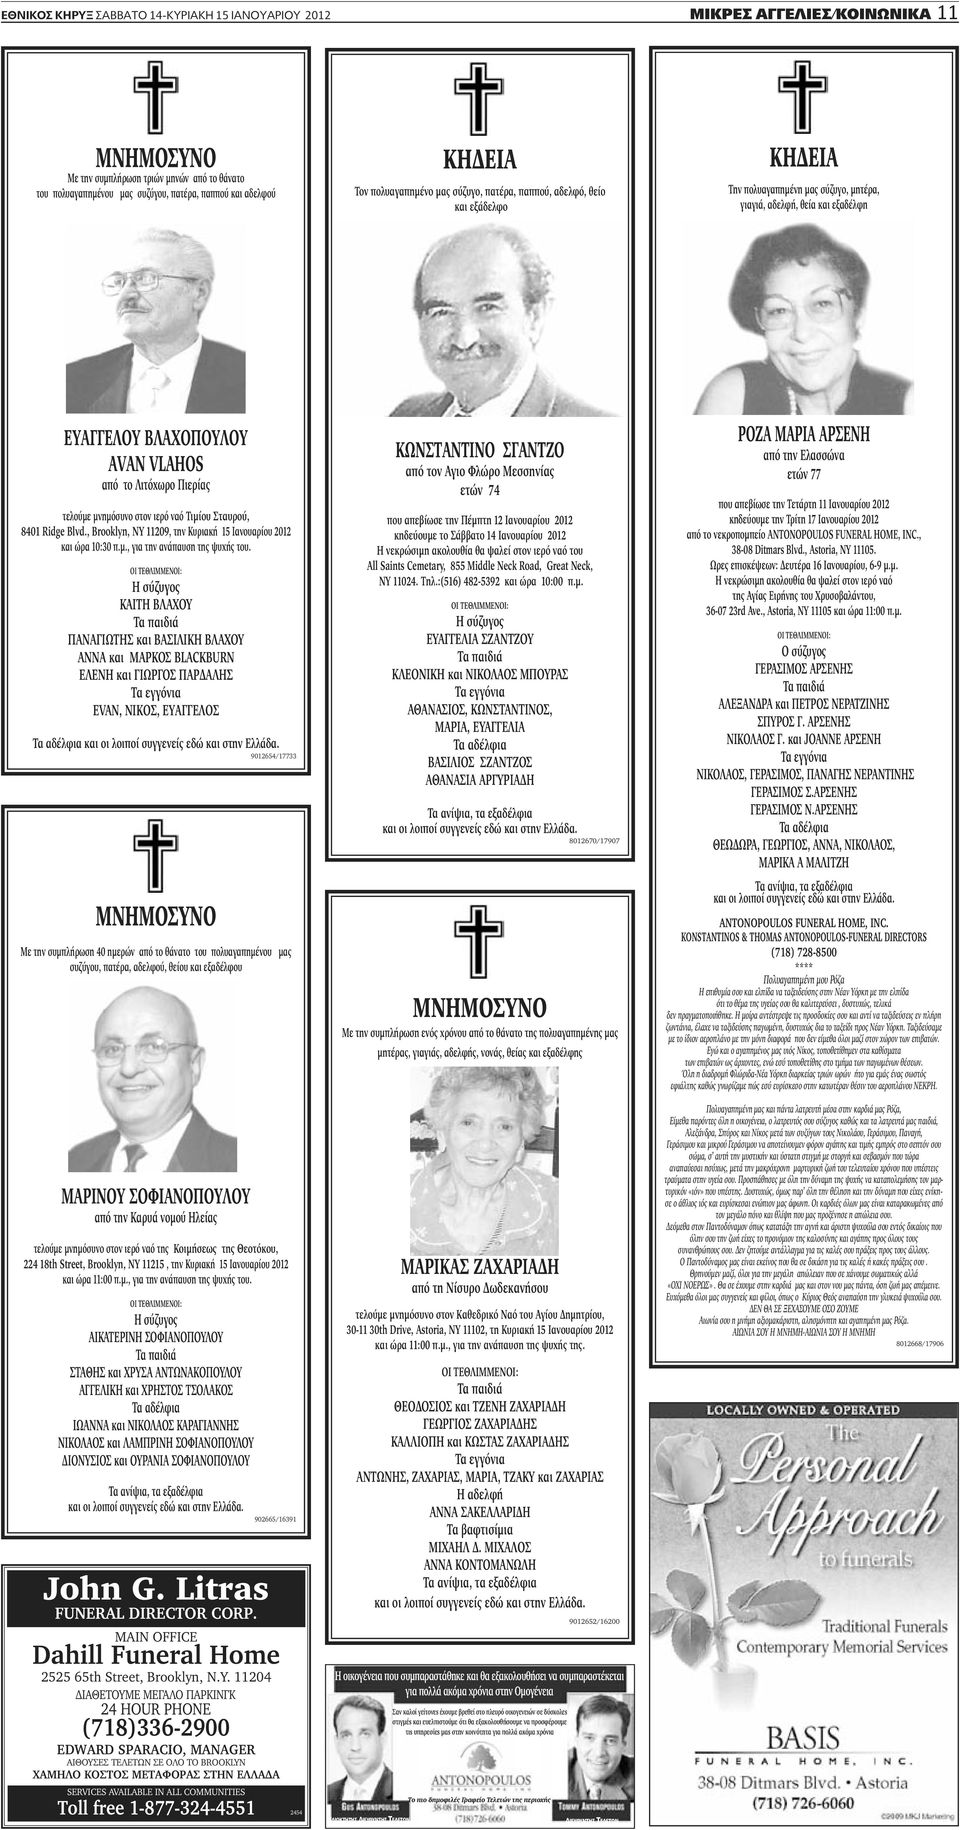 Λιτόχωρο Πιερίας τελούμε μνημόσυνο στον ιερό ναό Τιμίου Σταυρού, 8401 Ridge Blvd., Brooklyn, NY 11209, την Κυριακή 15 Ιανουαρίου 2012 και ώρα 10:30 π.μ., για την ανάπαυση της ψυχής του.